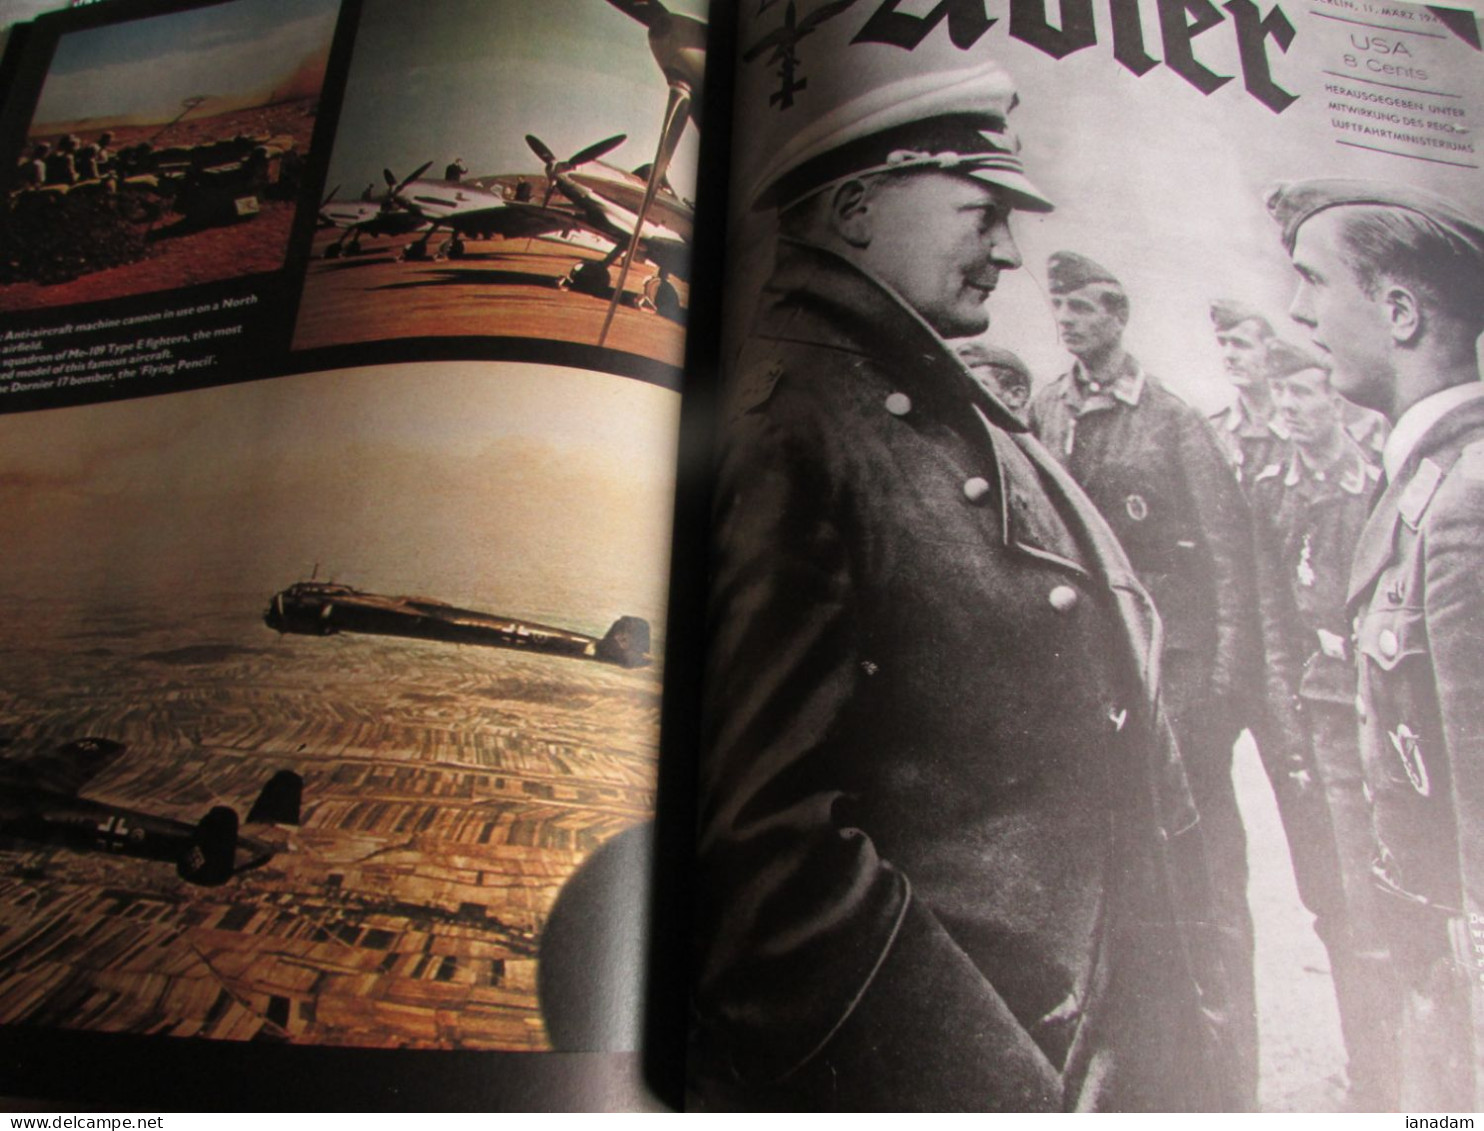 Der Adler The Luftwaffe Magazine BOOK